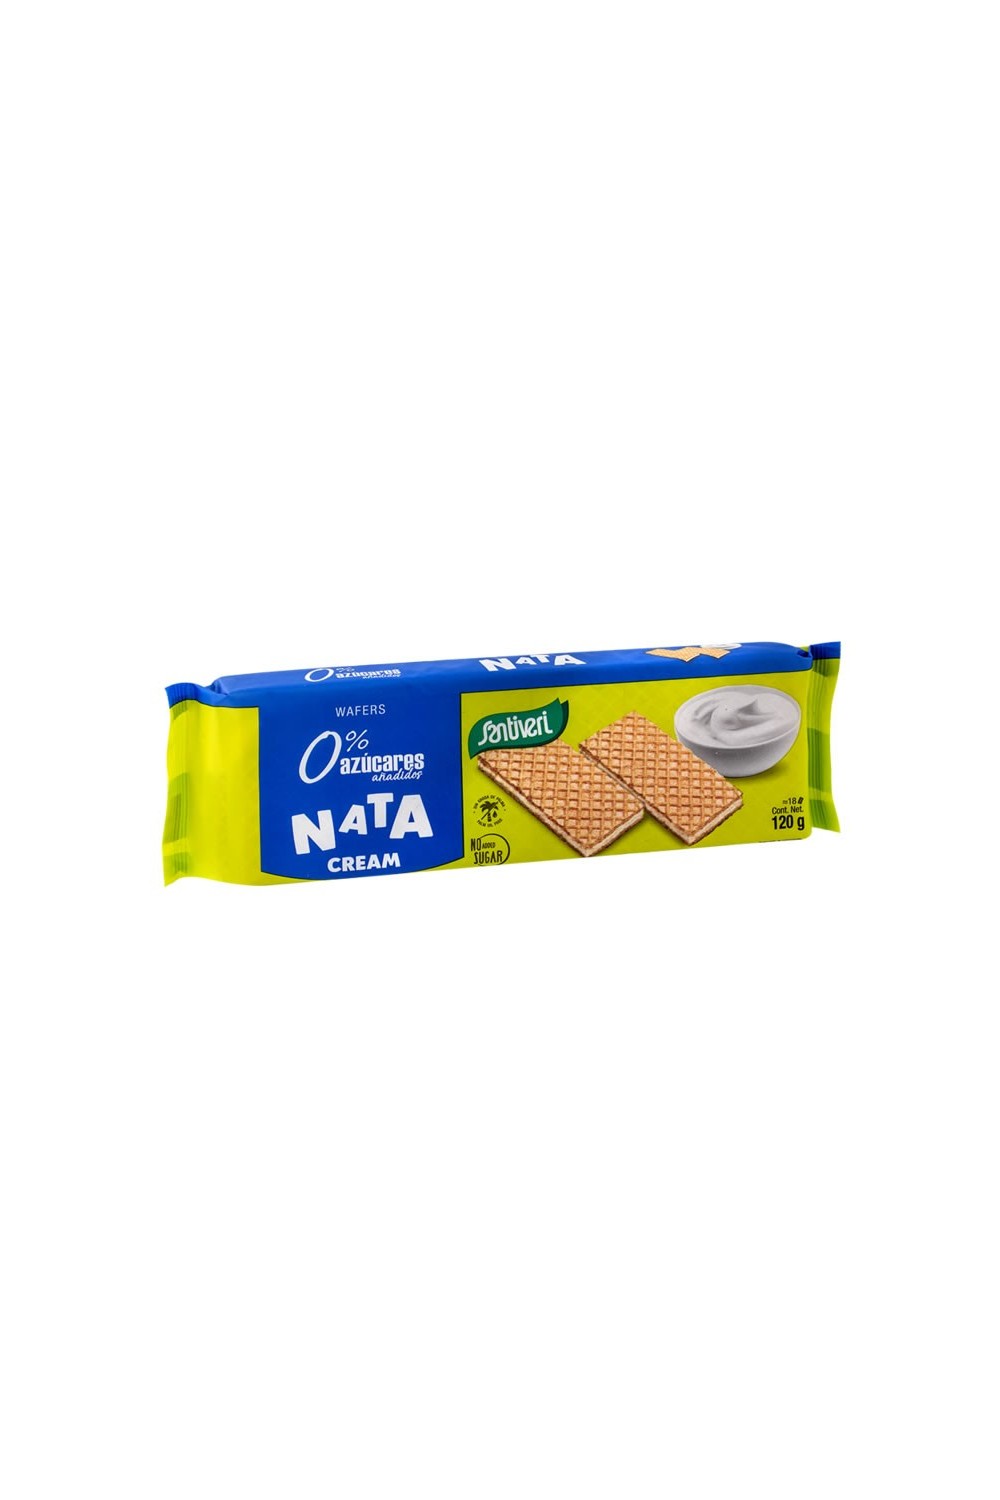 Santiveri Cream Filled Biscuits 120g